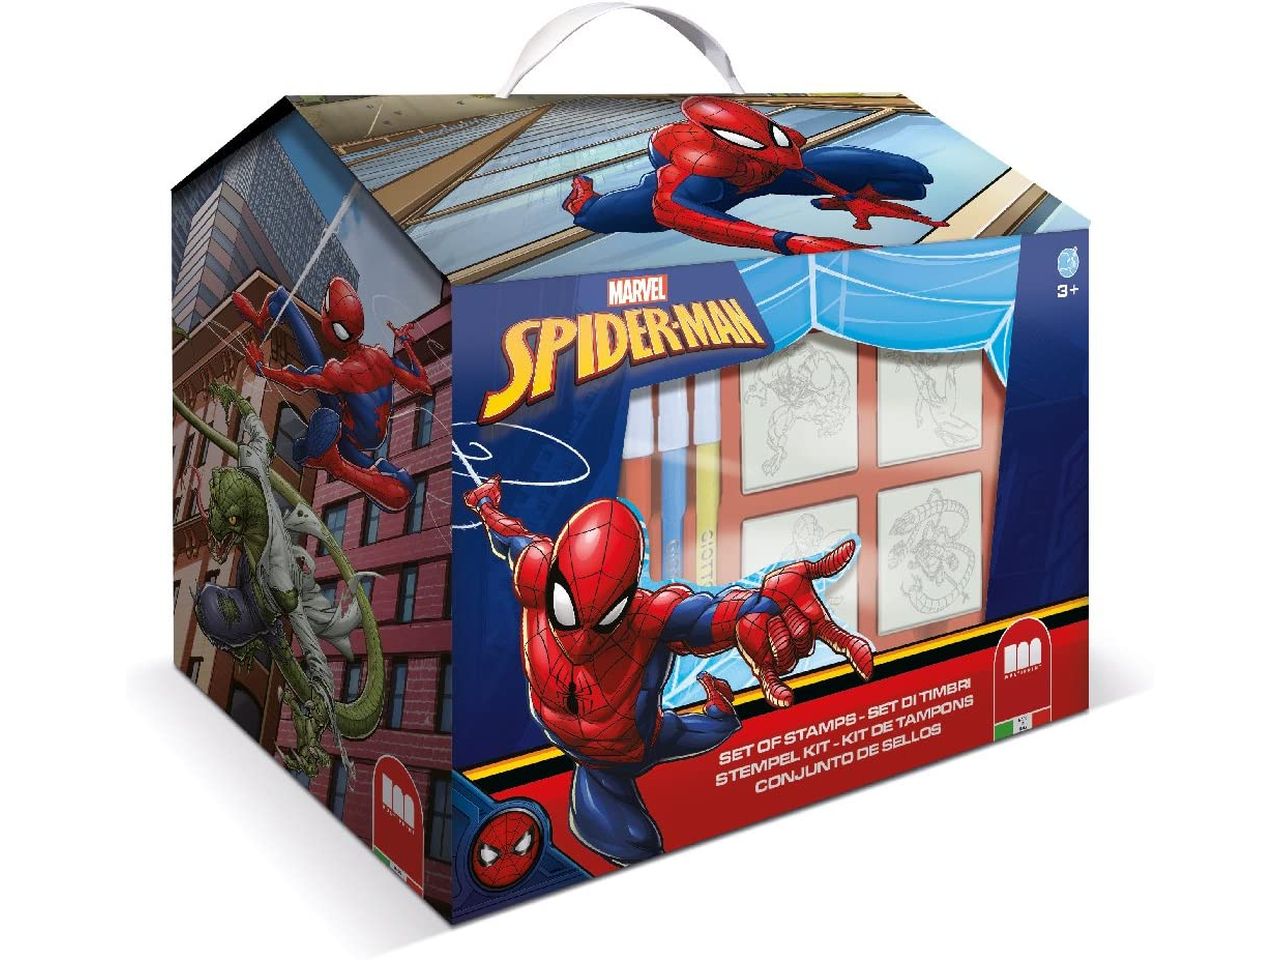 Spiderman casetta con 36 colori